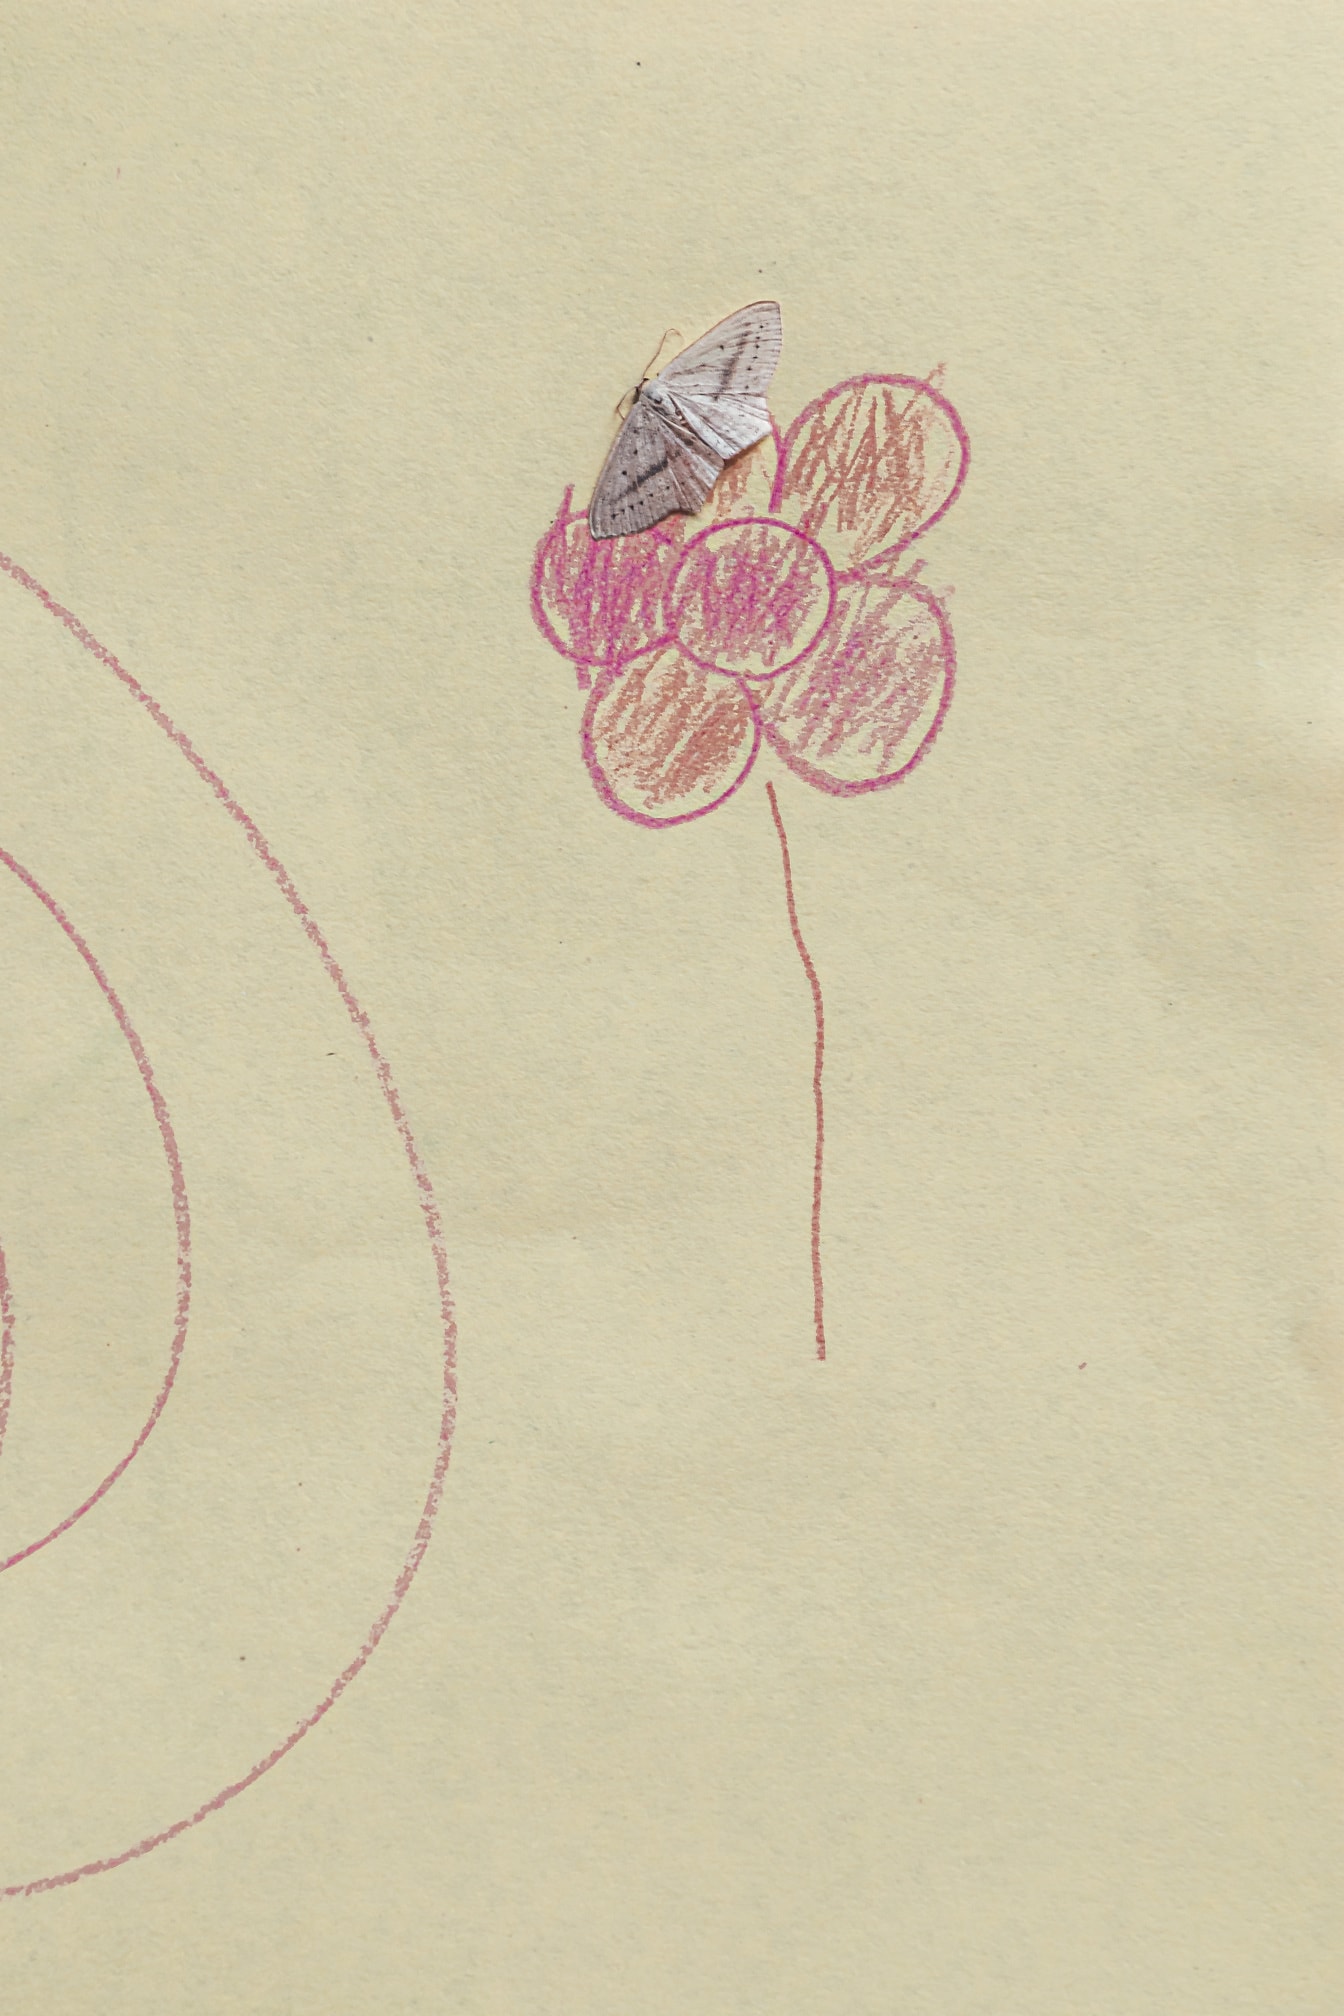 Mały biały motyl na papierze z rysunkiem różowawego kwiatu